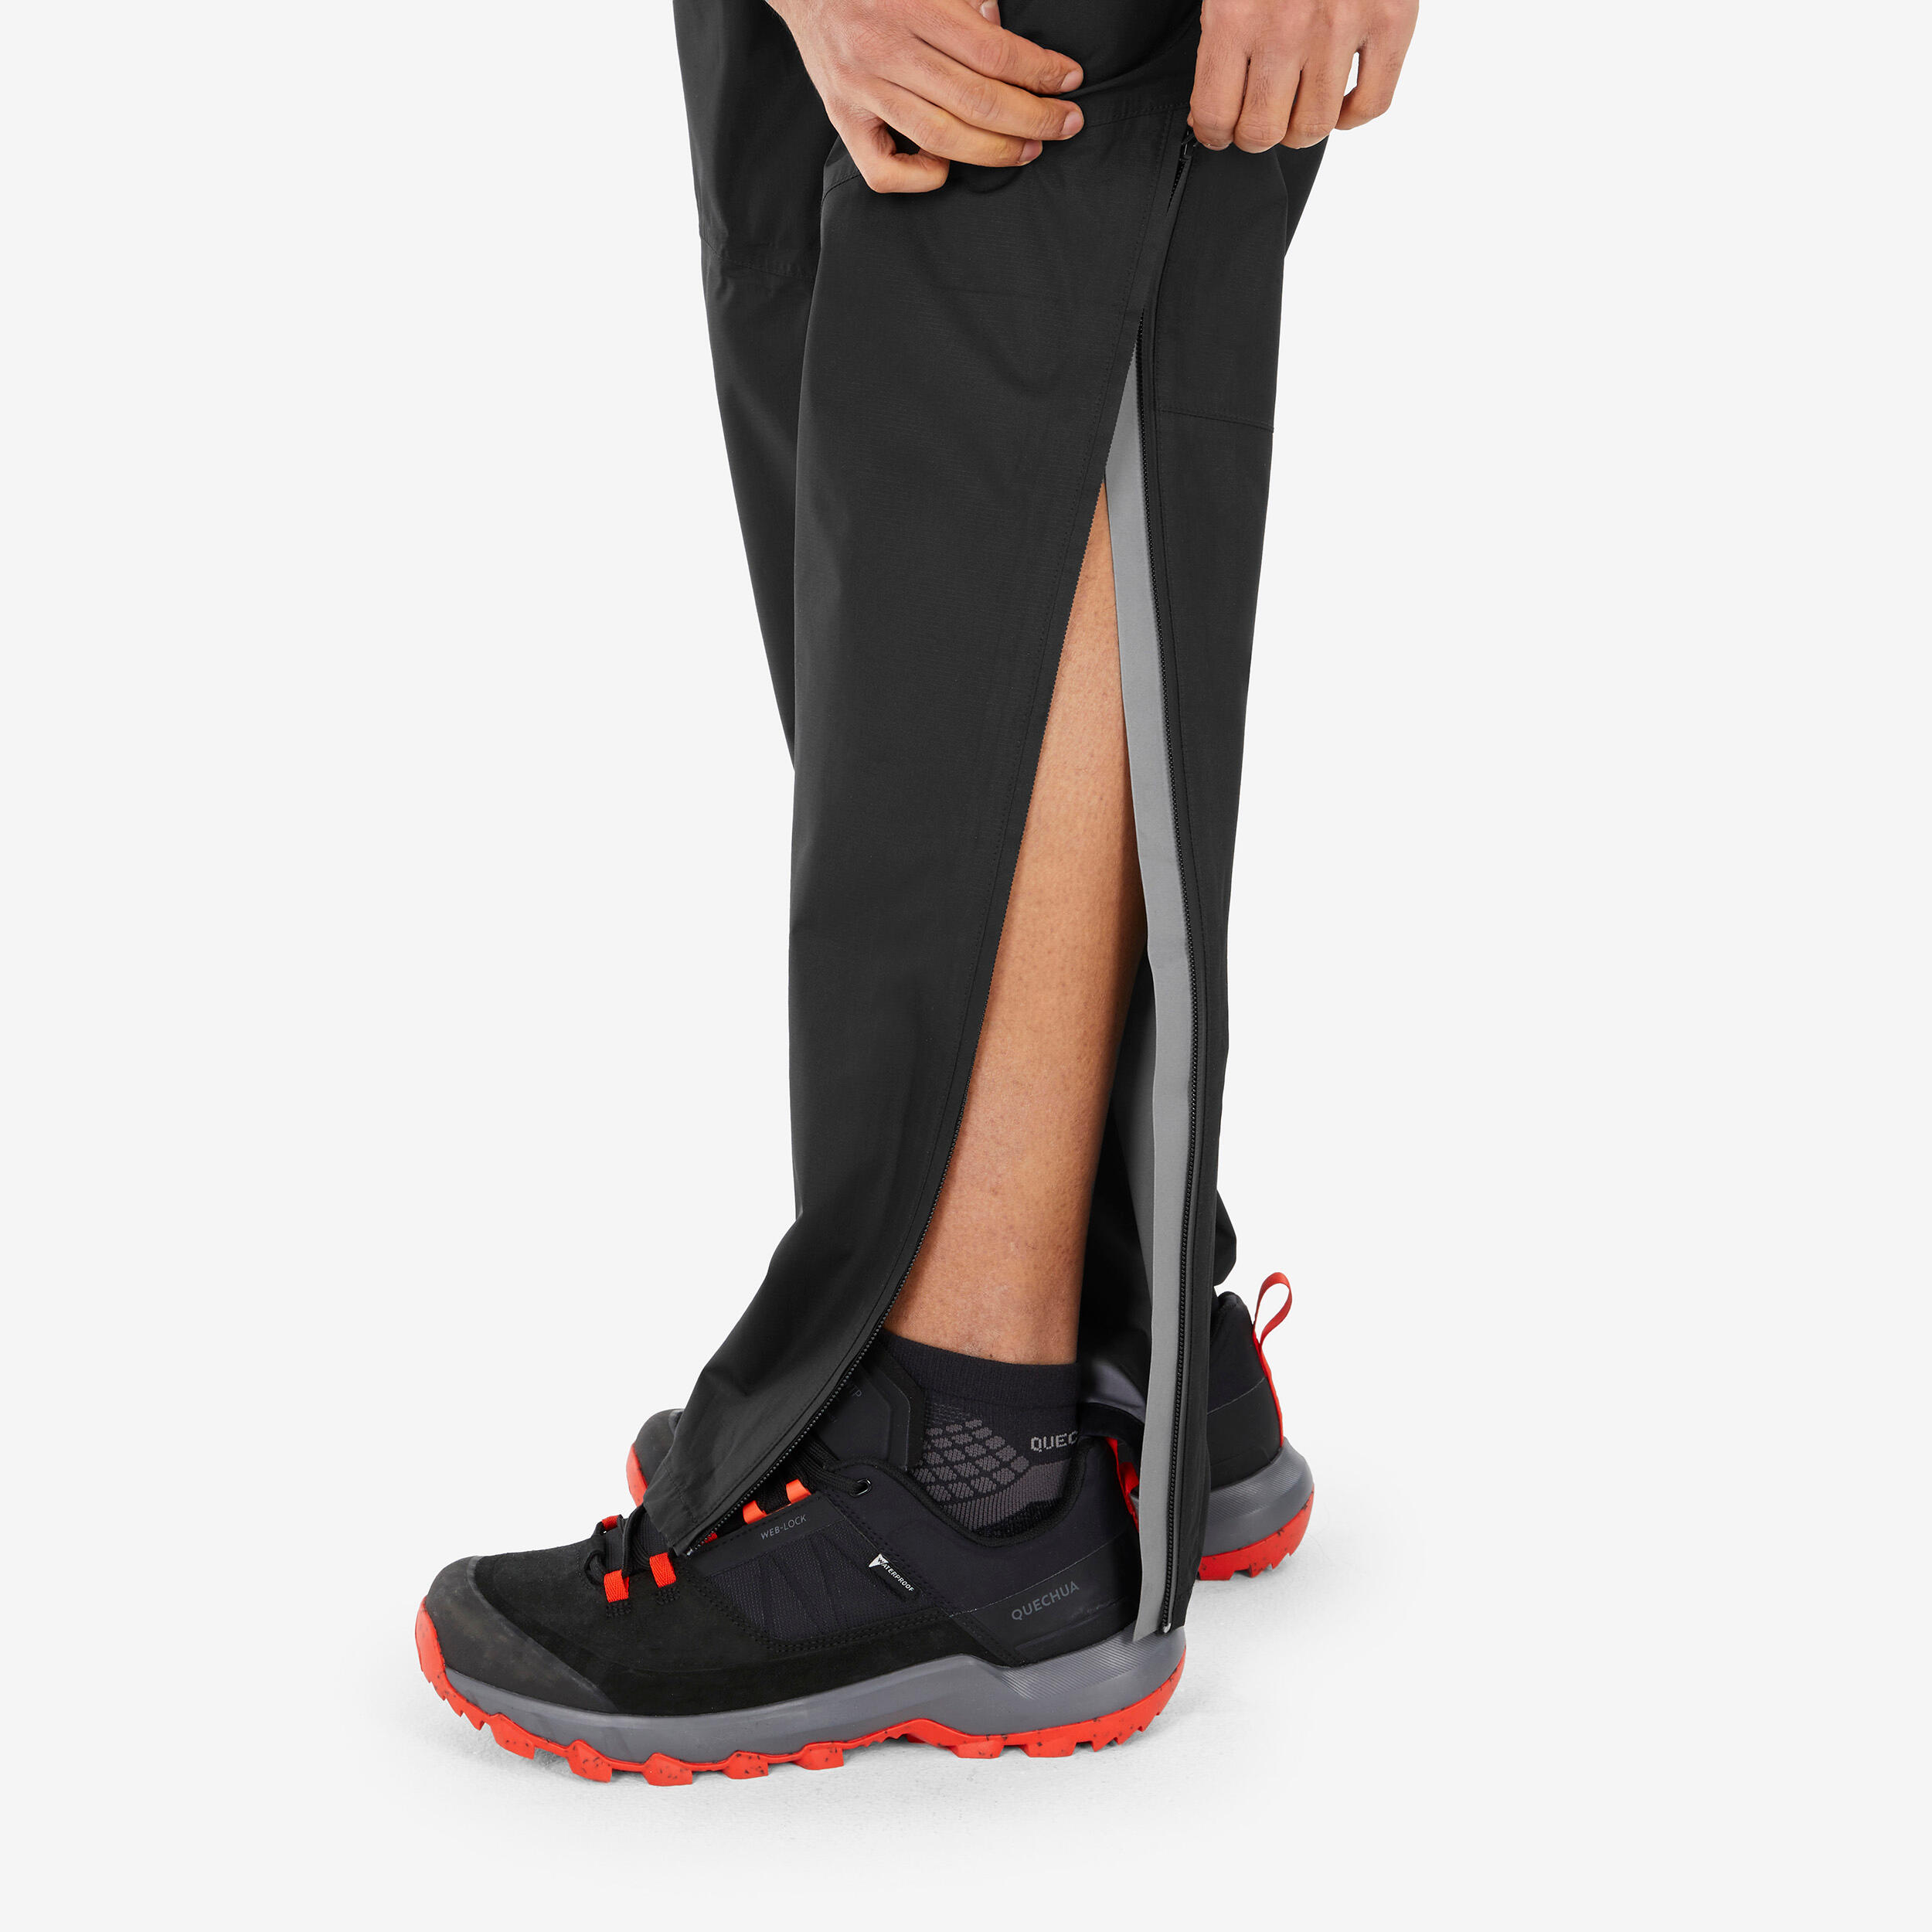 Pantalon de randonnée imperméable homme – MH 500 noir - QUECHUA